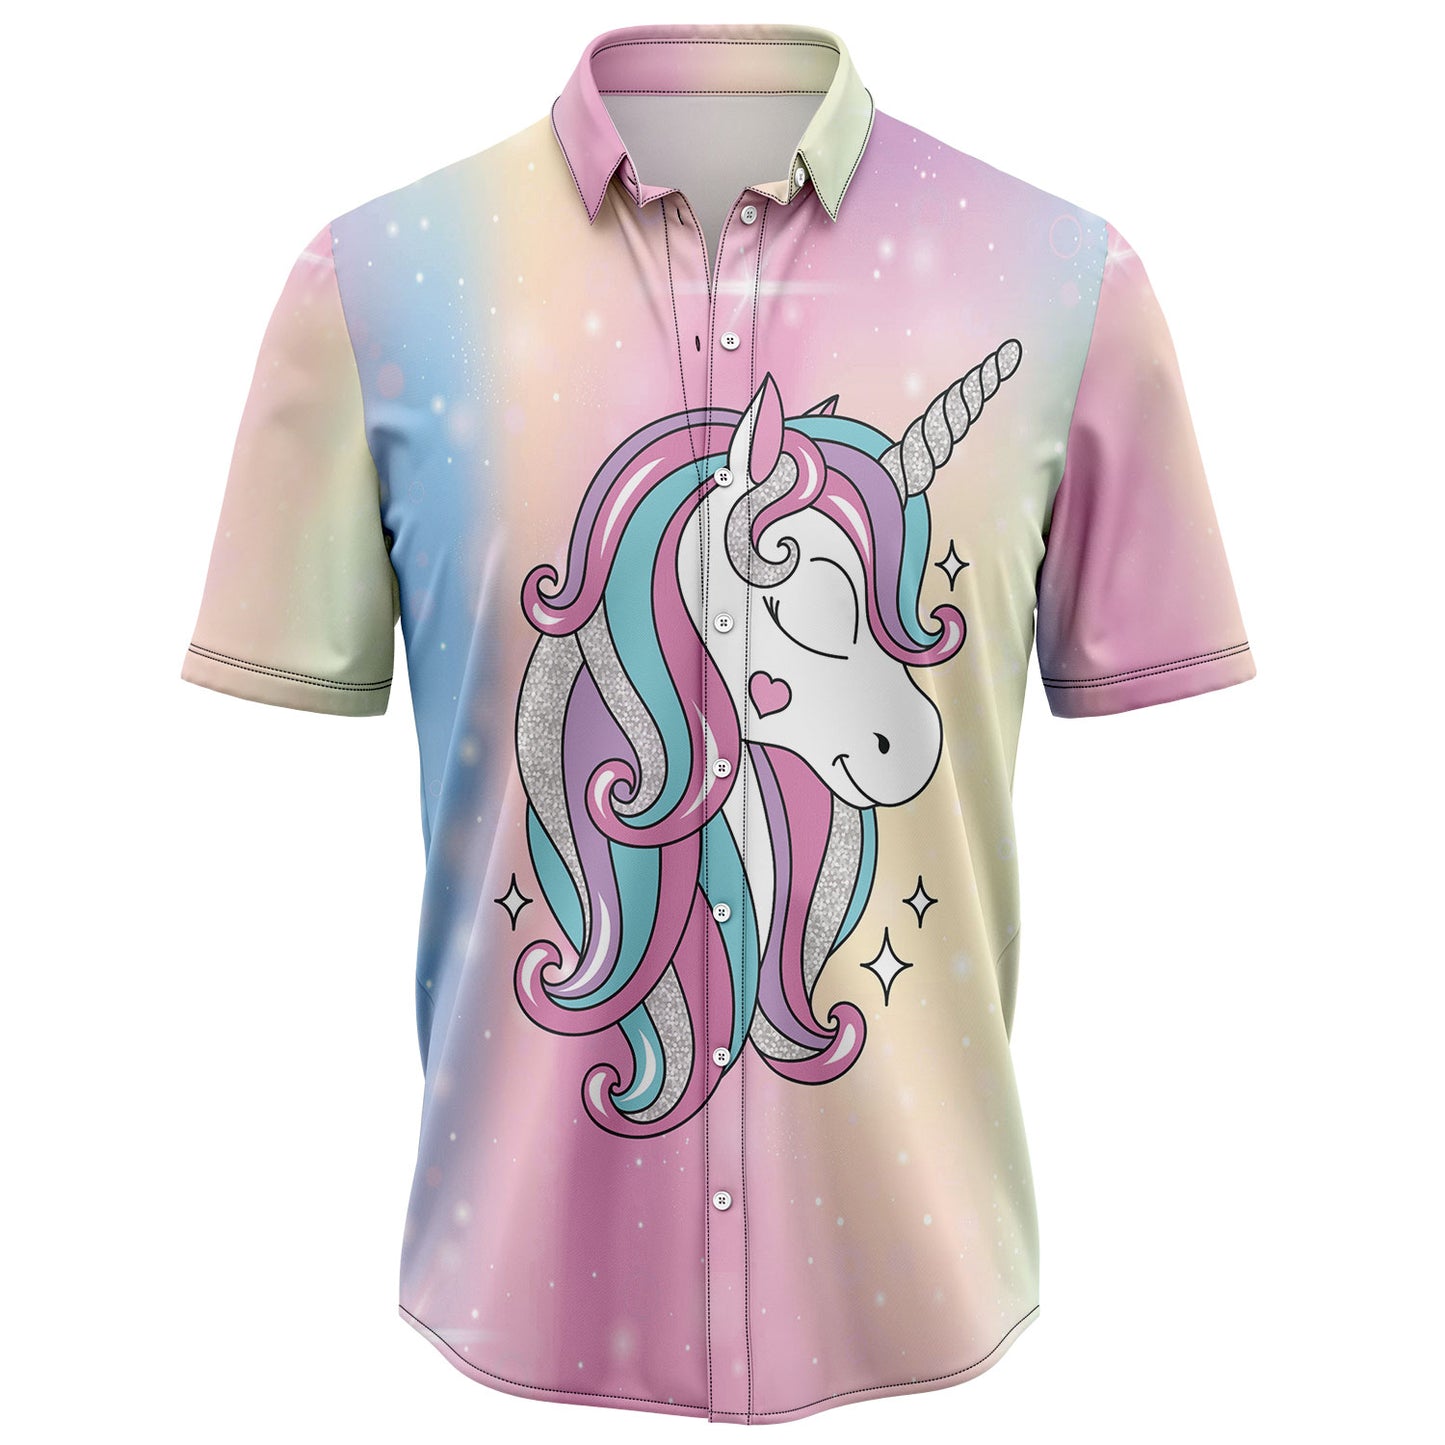 Unicorn Dramatic D2307 Hawaiian Shirt